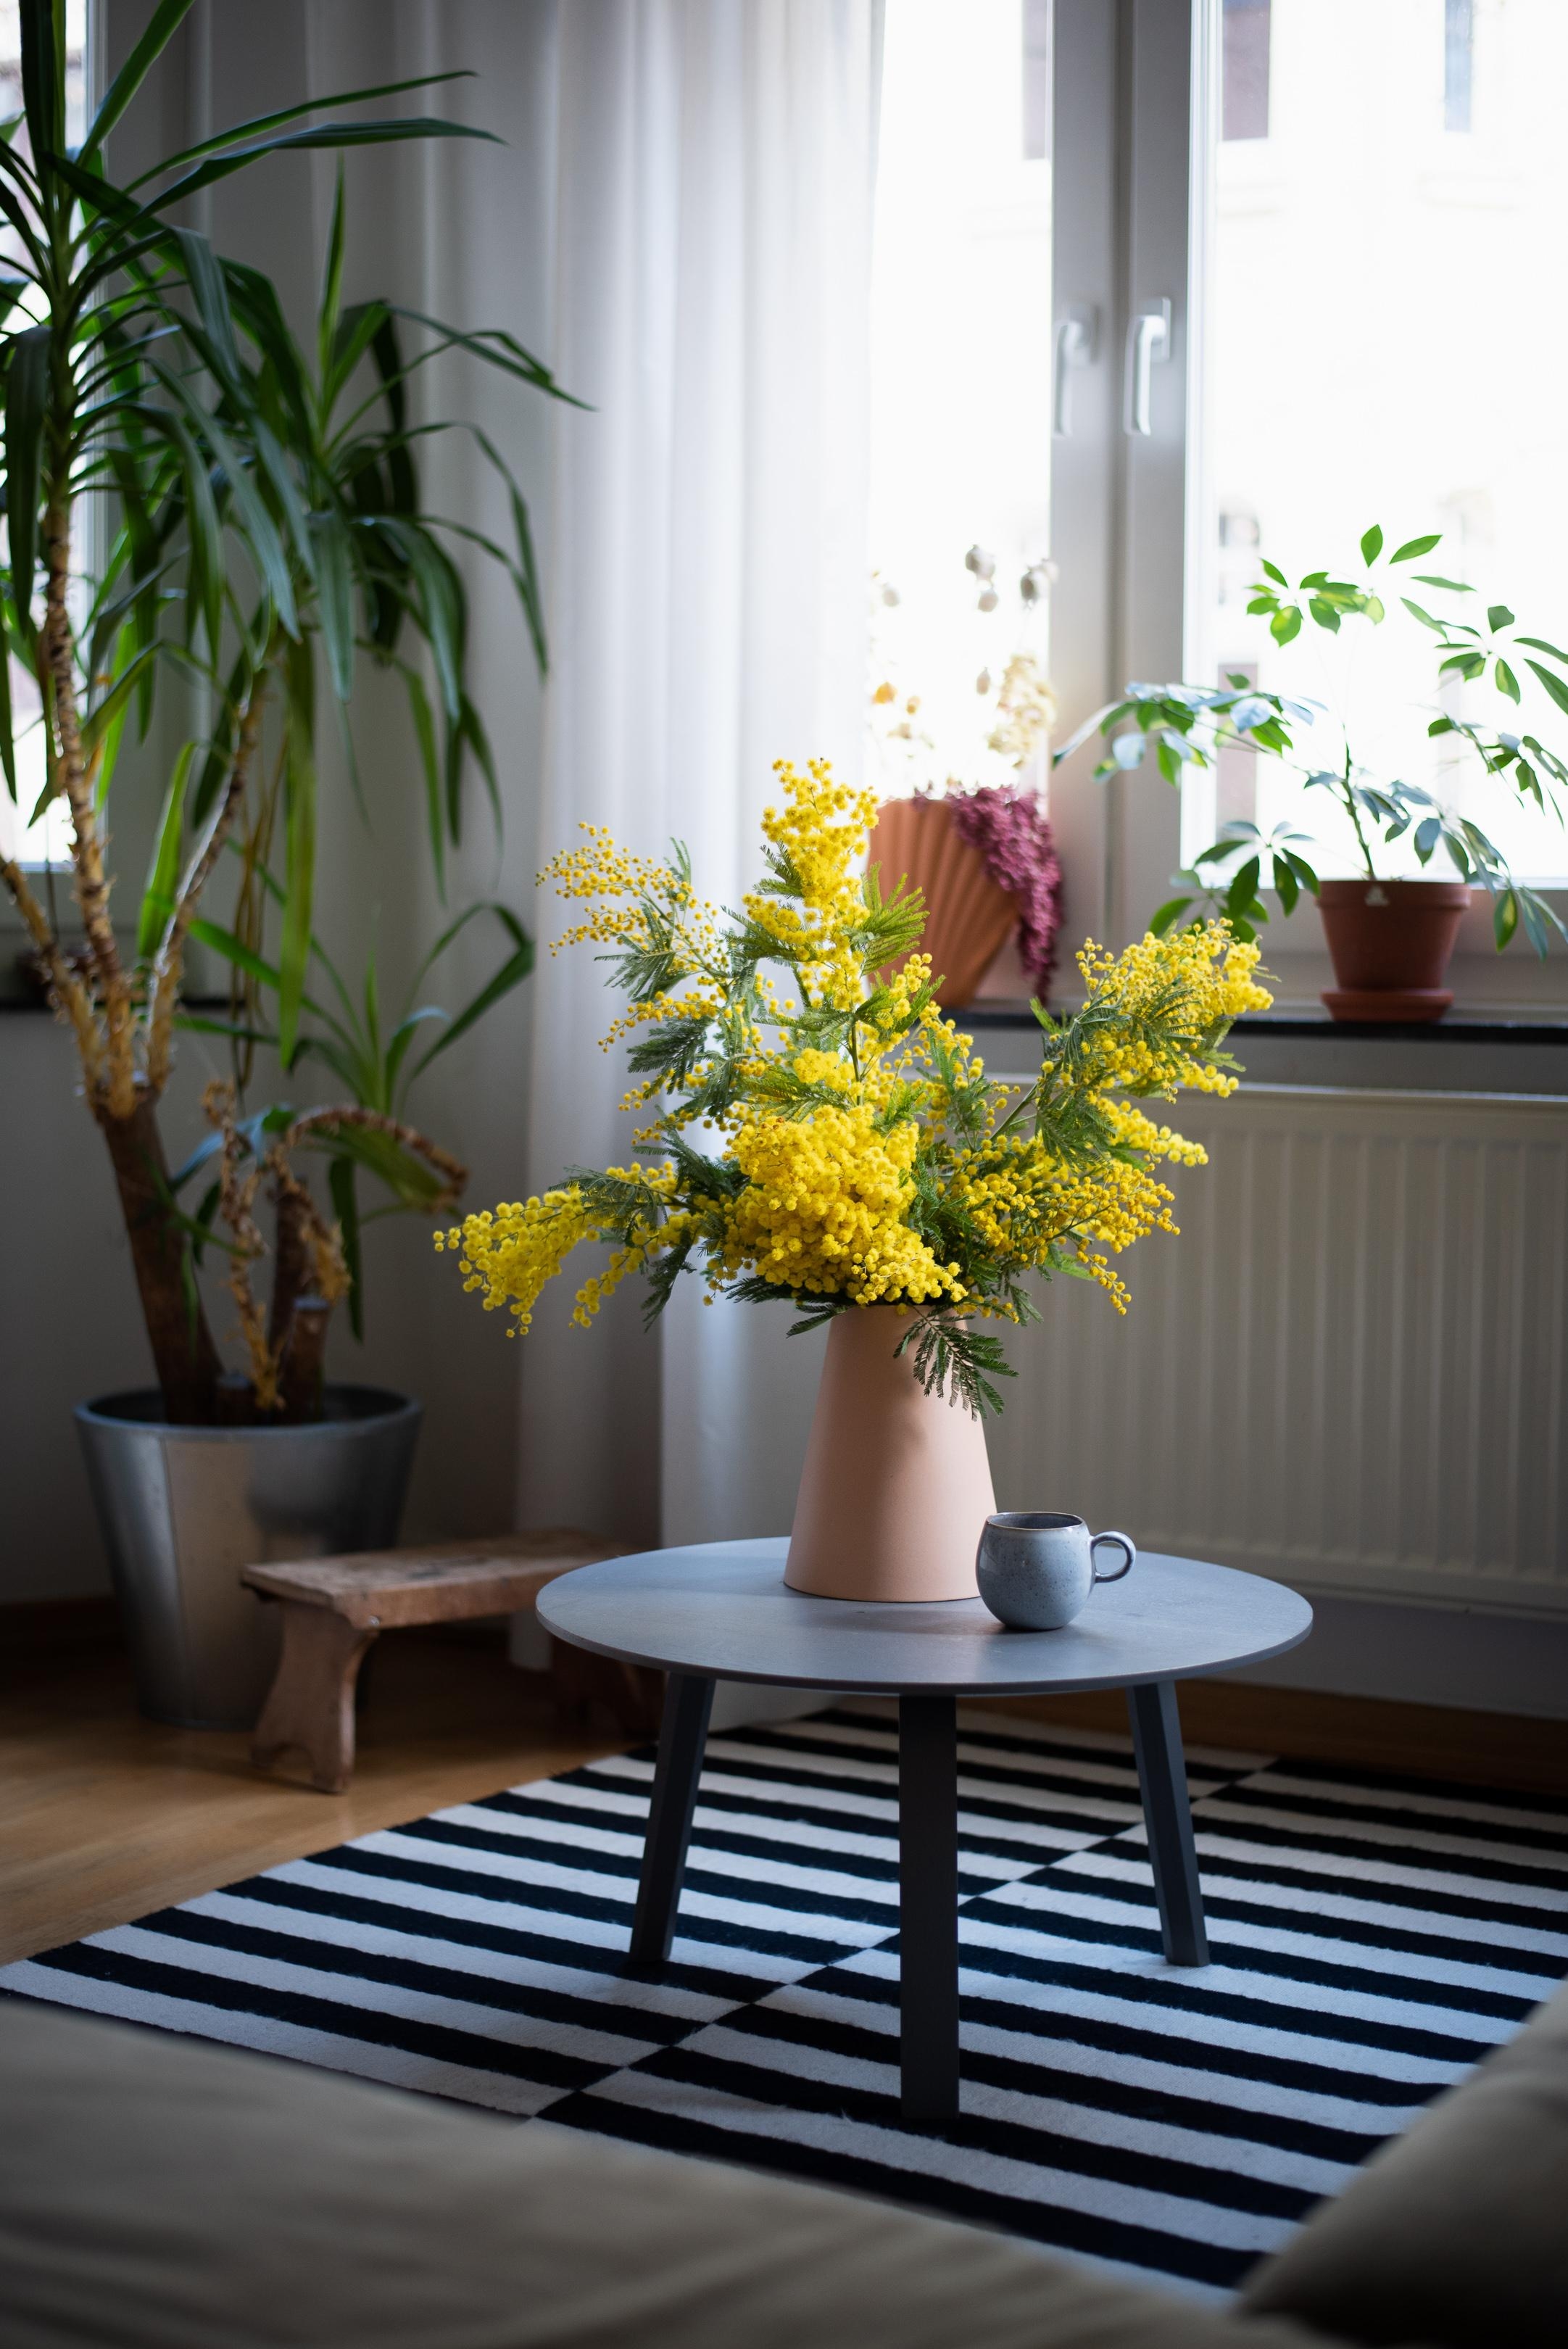 Mimosen-Liebe #wohnzimmer #mimosen #interiorinspo #couchtisch #vase #deko